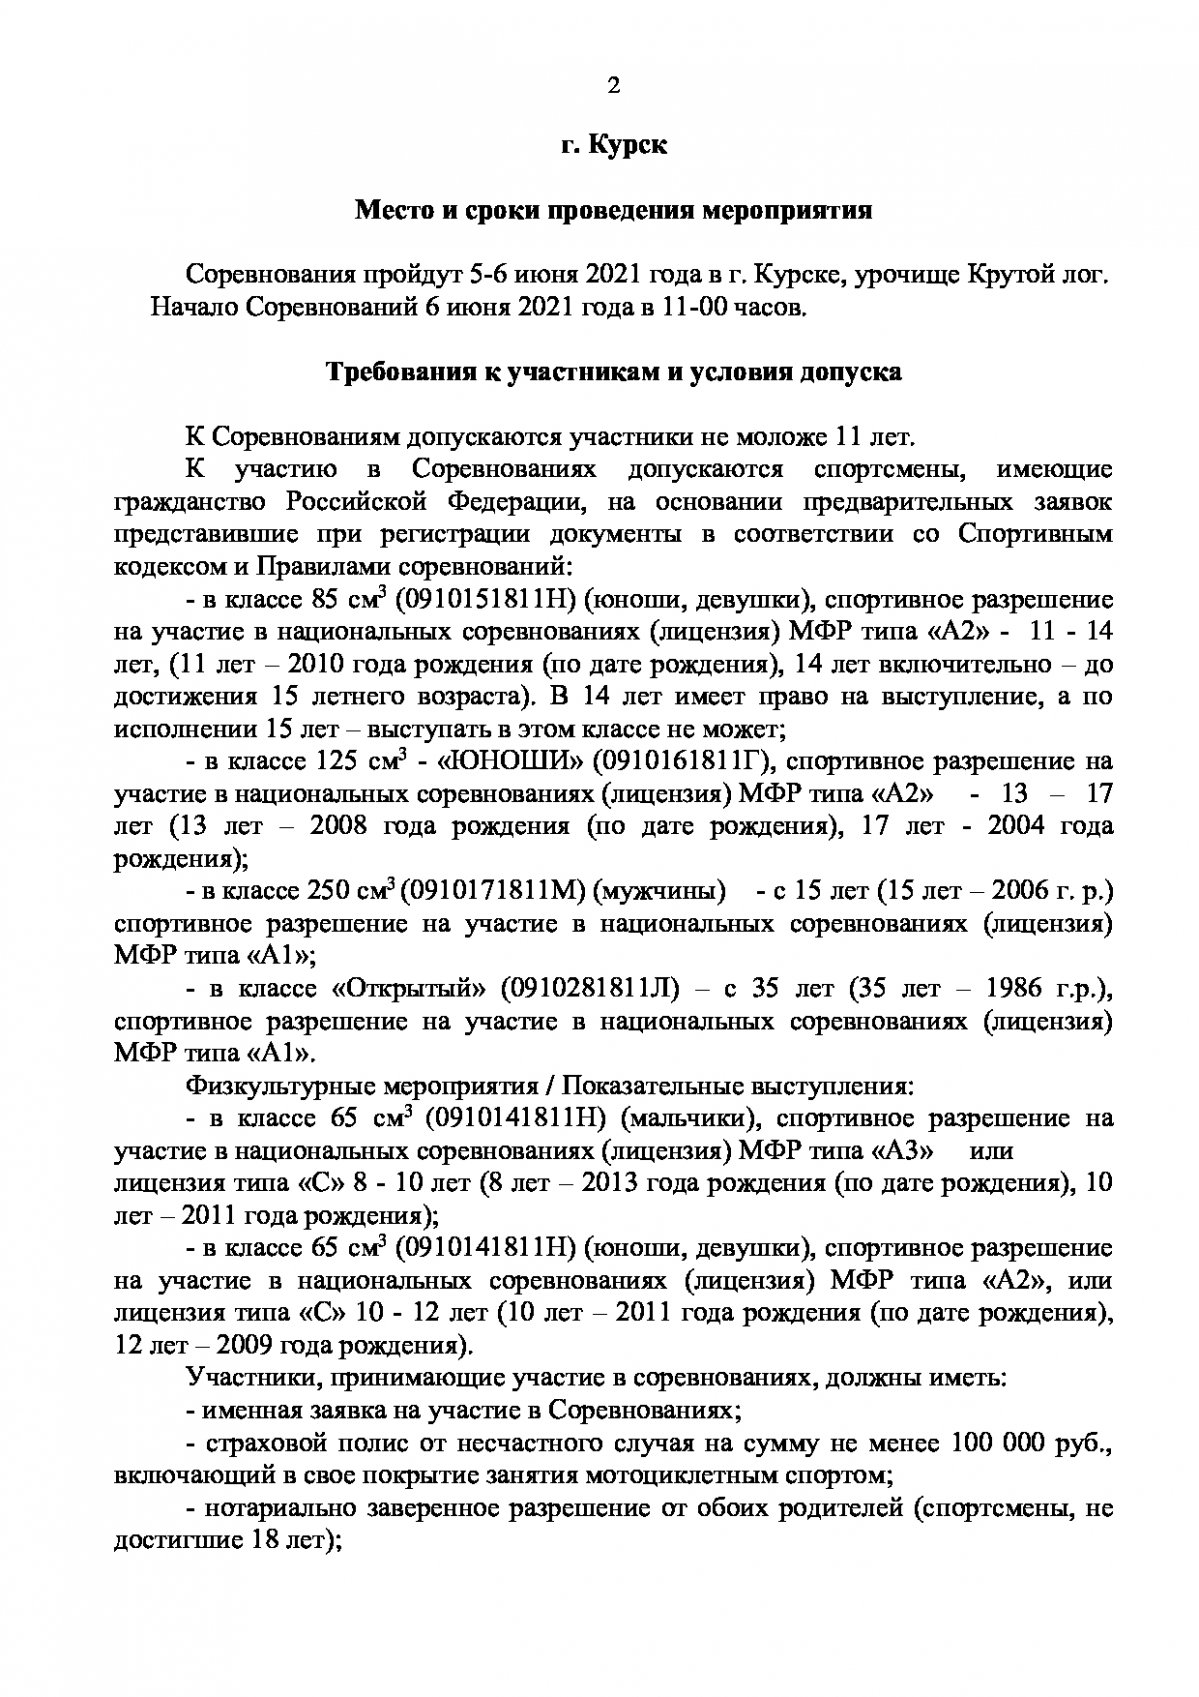 Положение о проведении мотокросса, посвященного памяти А.Нифонтова, 5-6 июня 2021